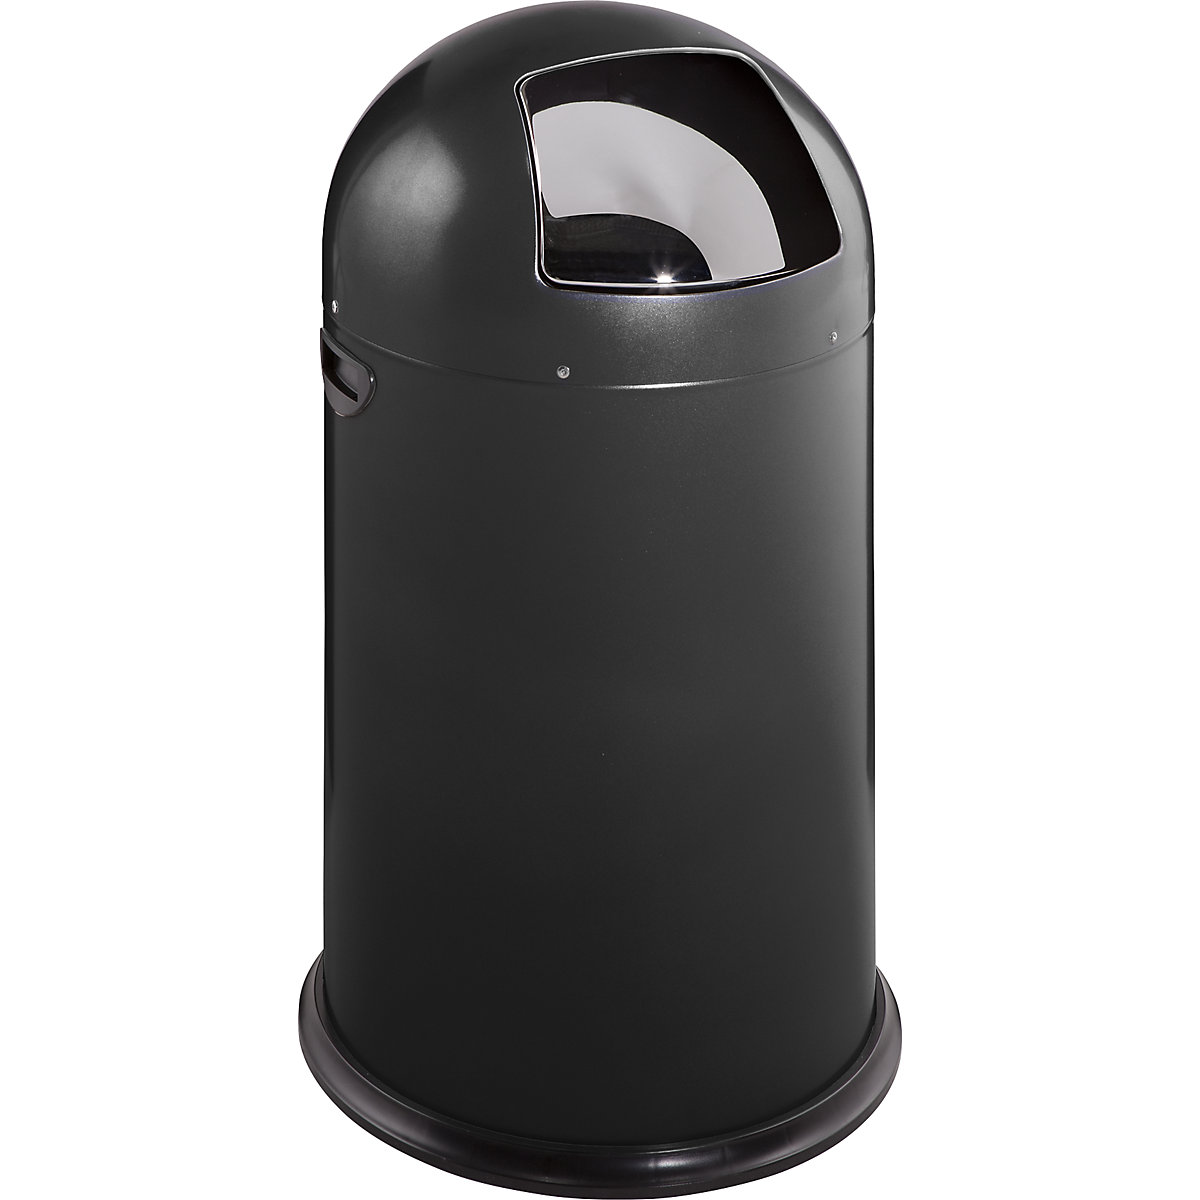 VAR – Odpadkový koš s funkcí Push, objem 40 l, výška 740 mm, hluboce černá